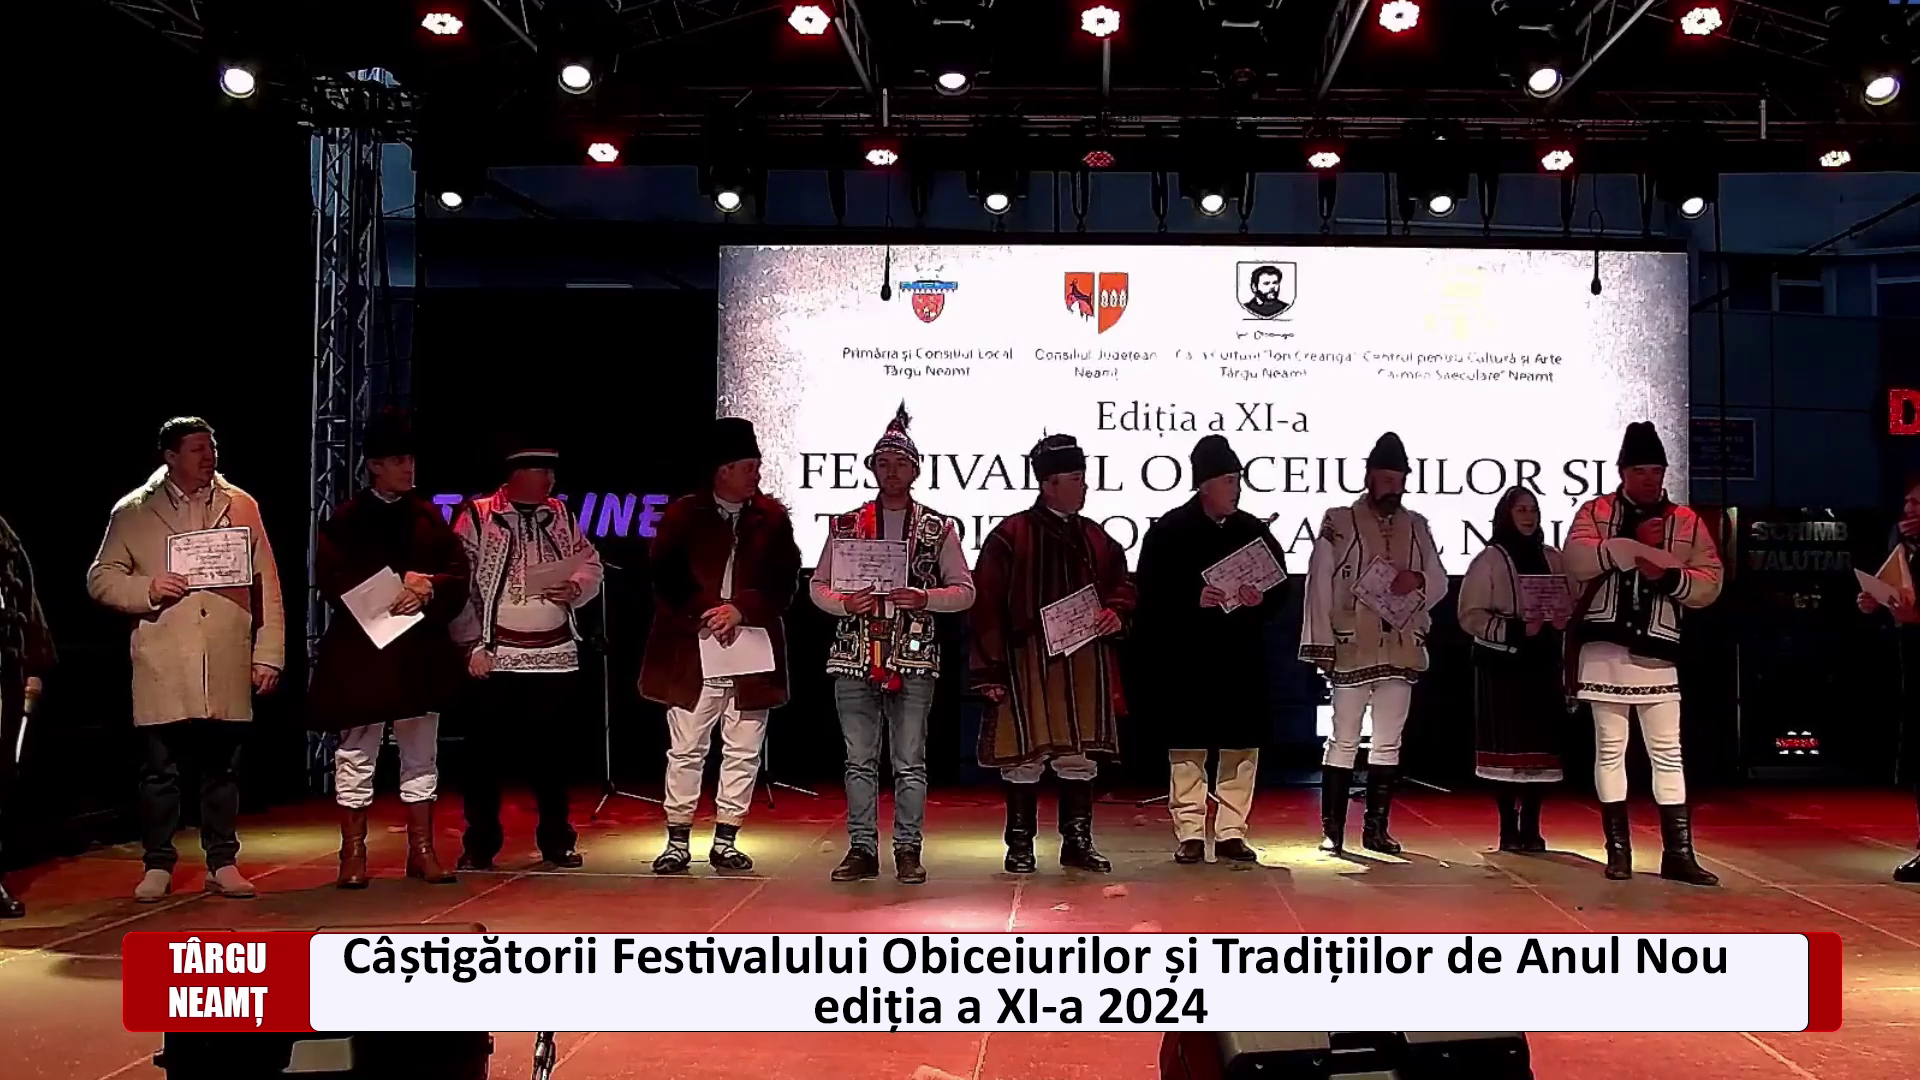 Câștigătorii Festivalului Obiceiurilor și Tradițiilor de Anul Nou ediția a XI-a 2024